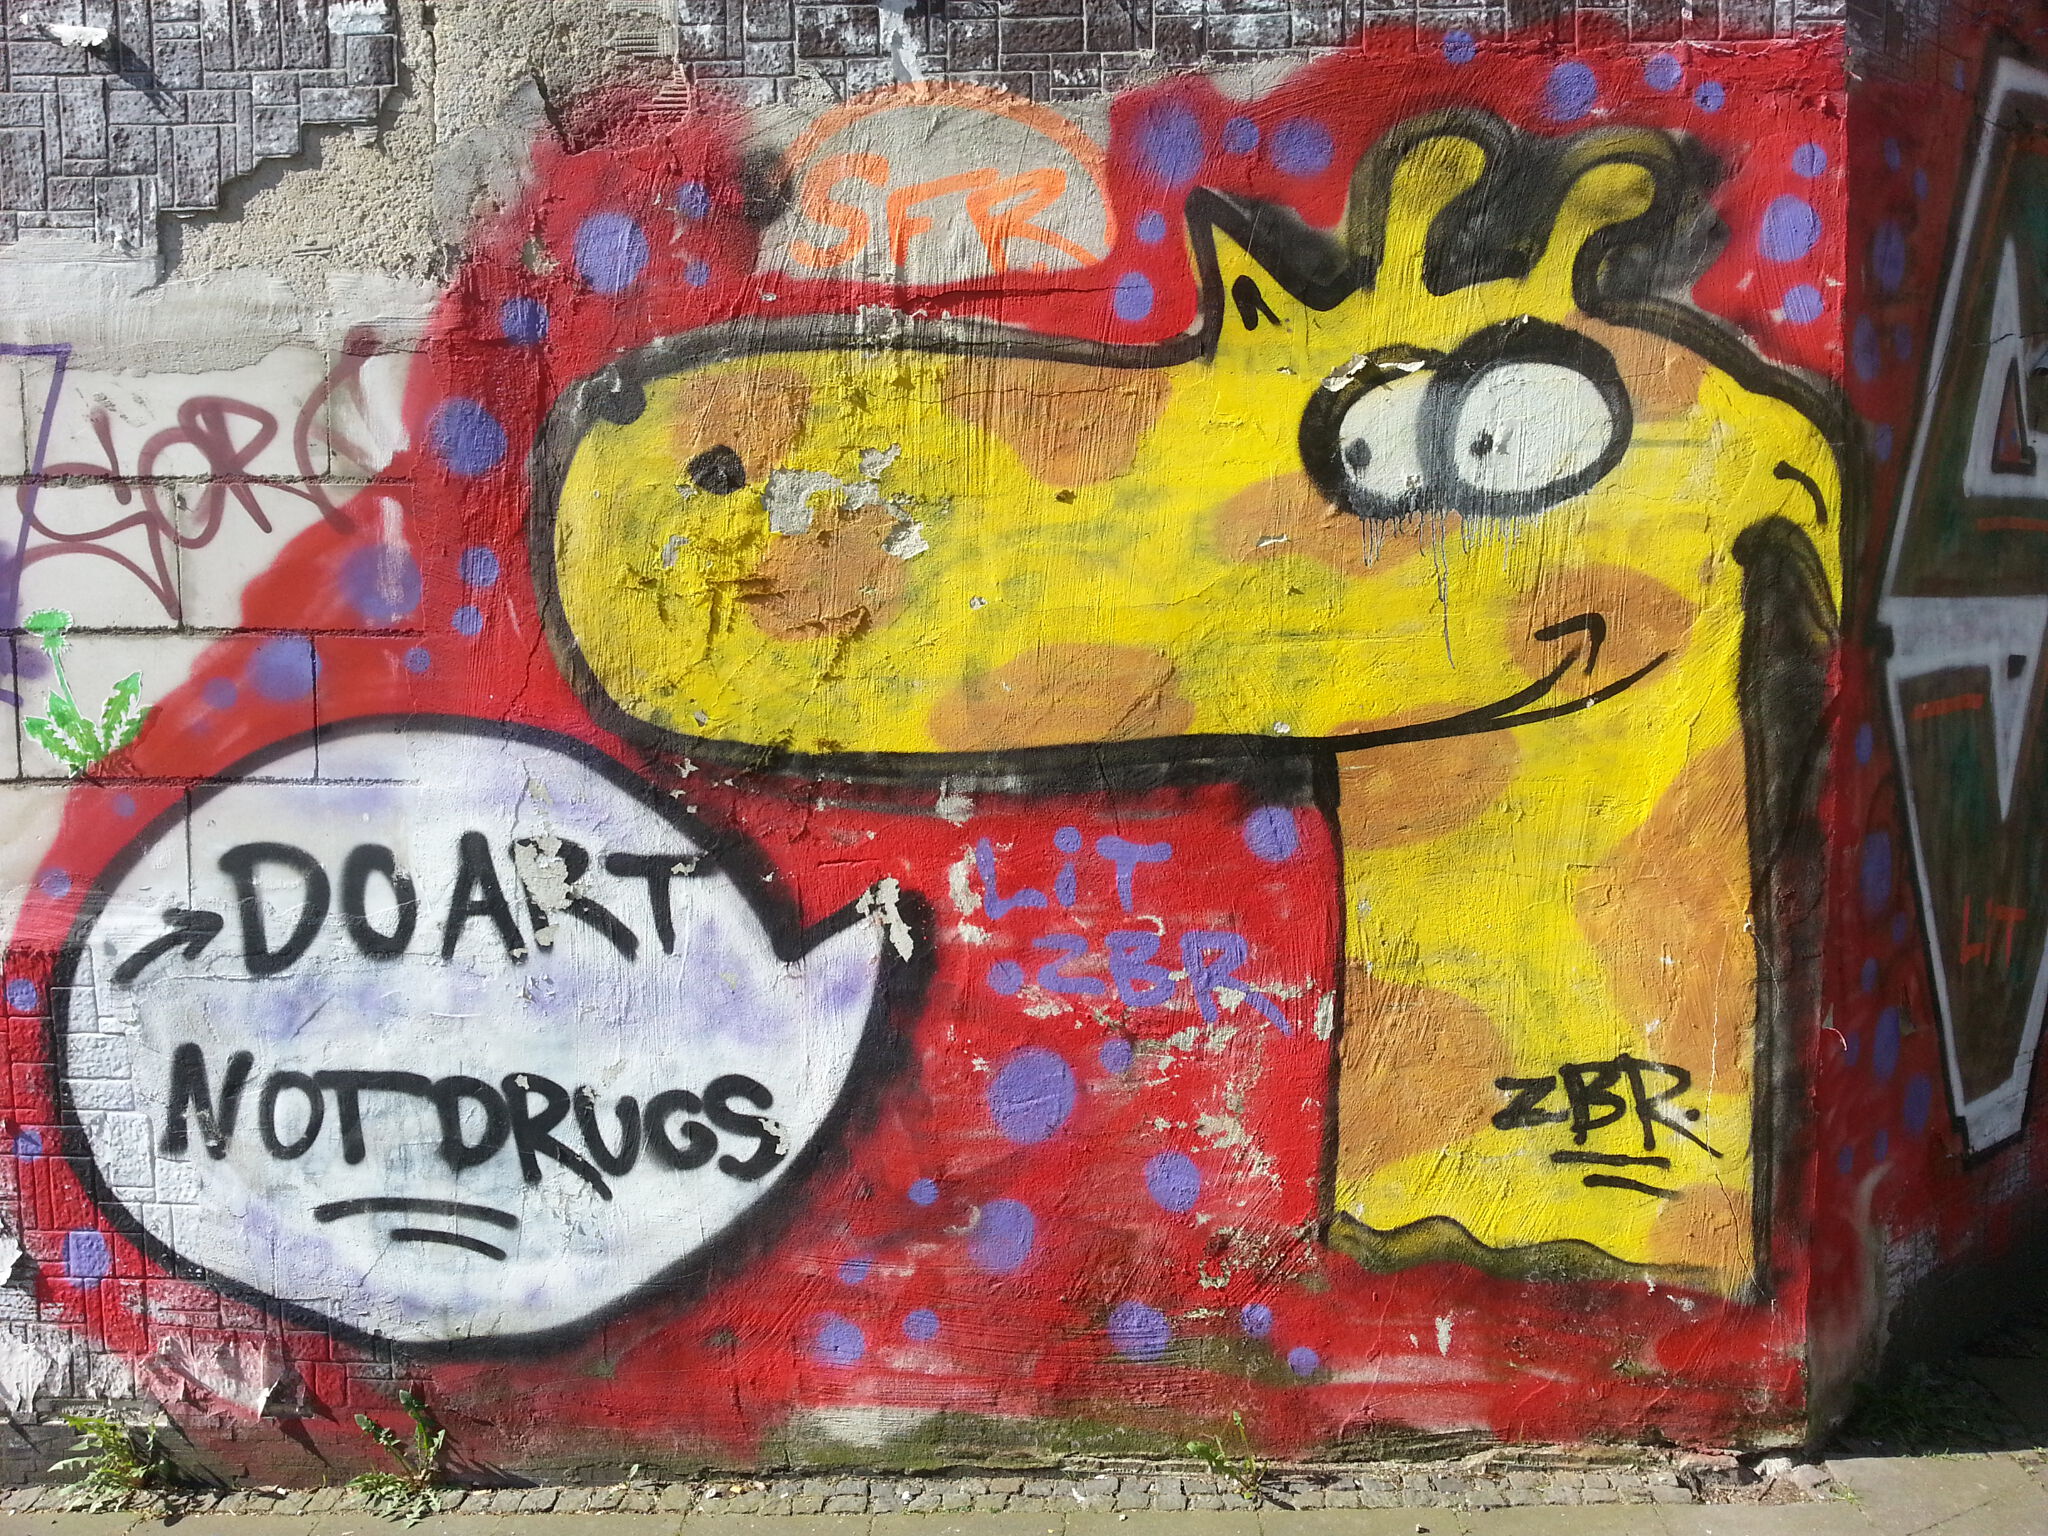 Zbr&mdash;Do Art Not Drugs